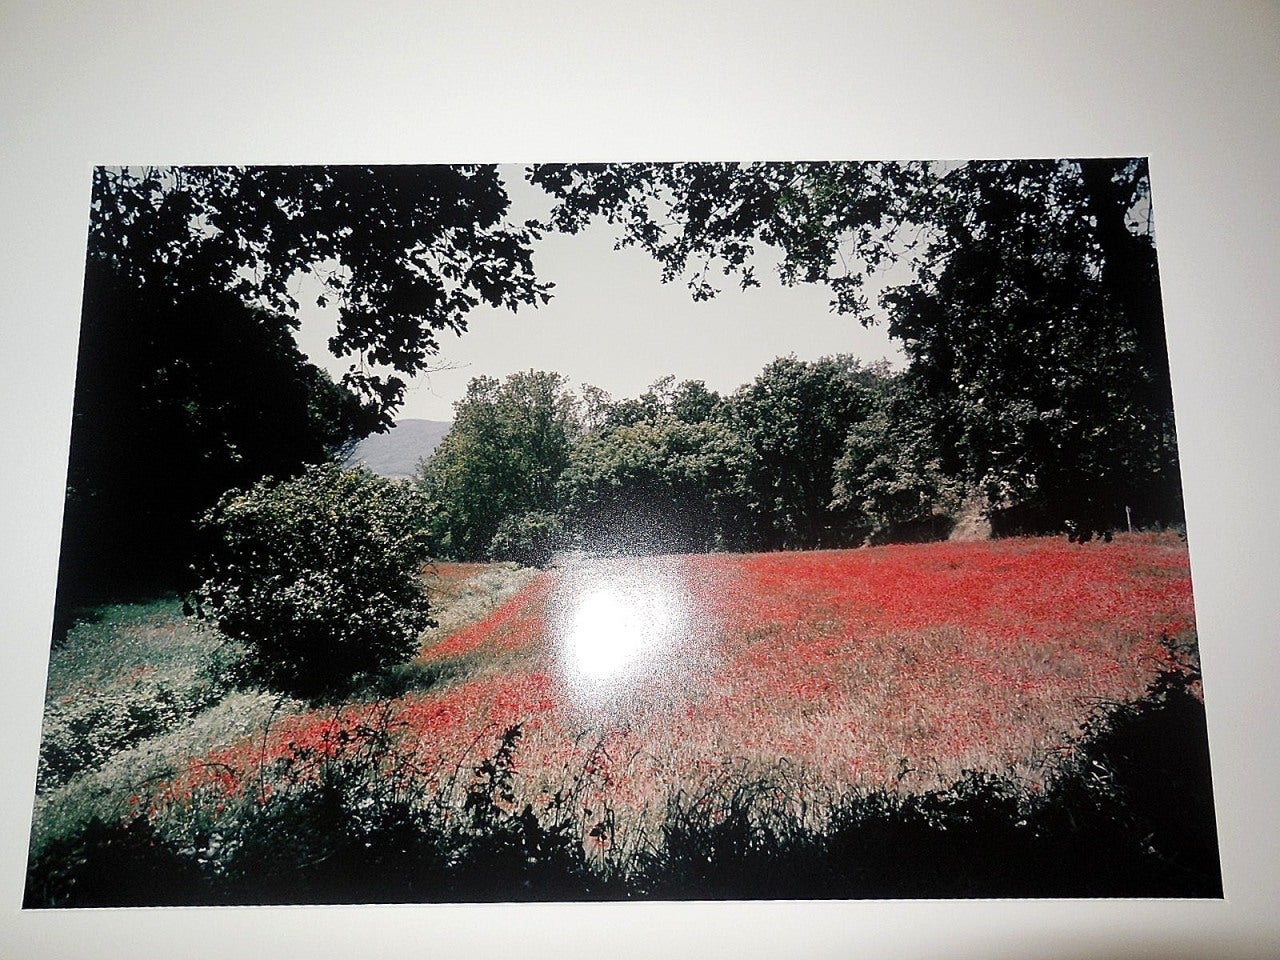 Tuscany, Feld mit Mohnblumen, 1996 Große Vintage-Farbfotografie, C-Druck, signiert (Grau), Landscape Photograph, von Joel Meyerowitz